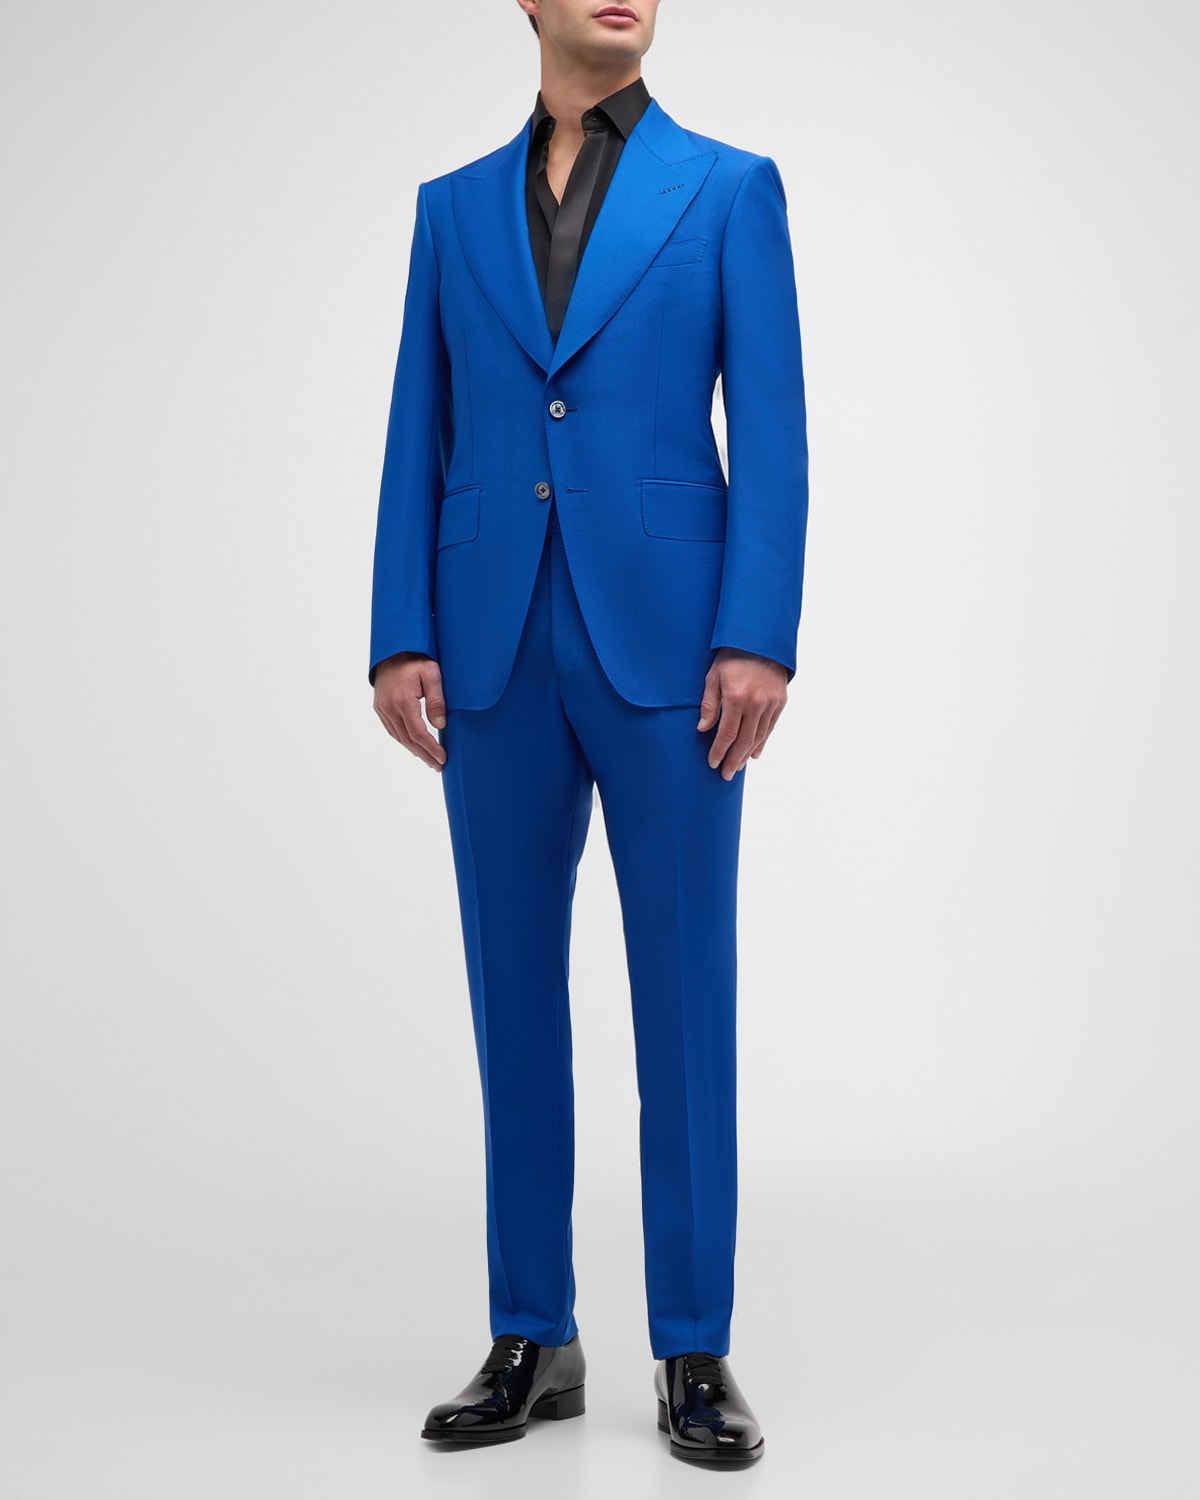 Tom Ford Men's Original British Mohair Atticus Suit In Royal Blue